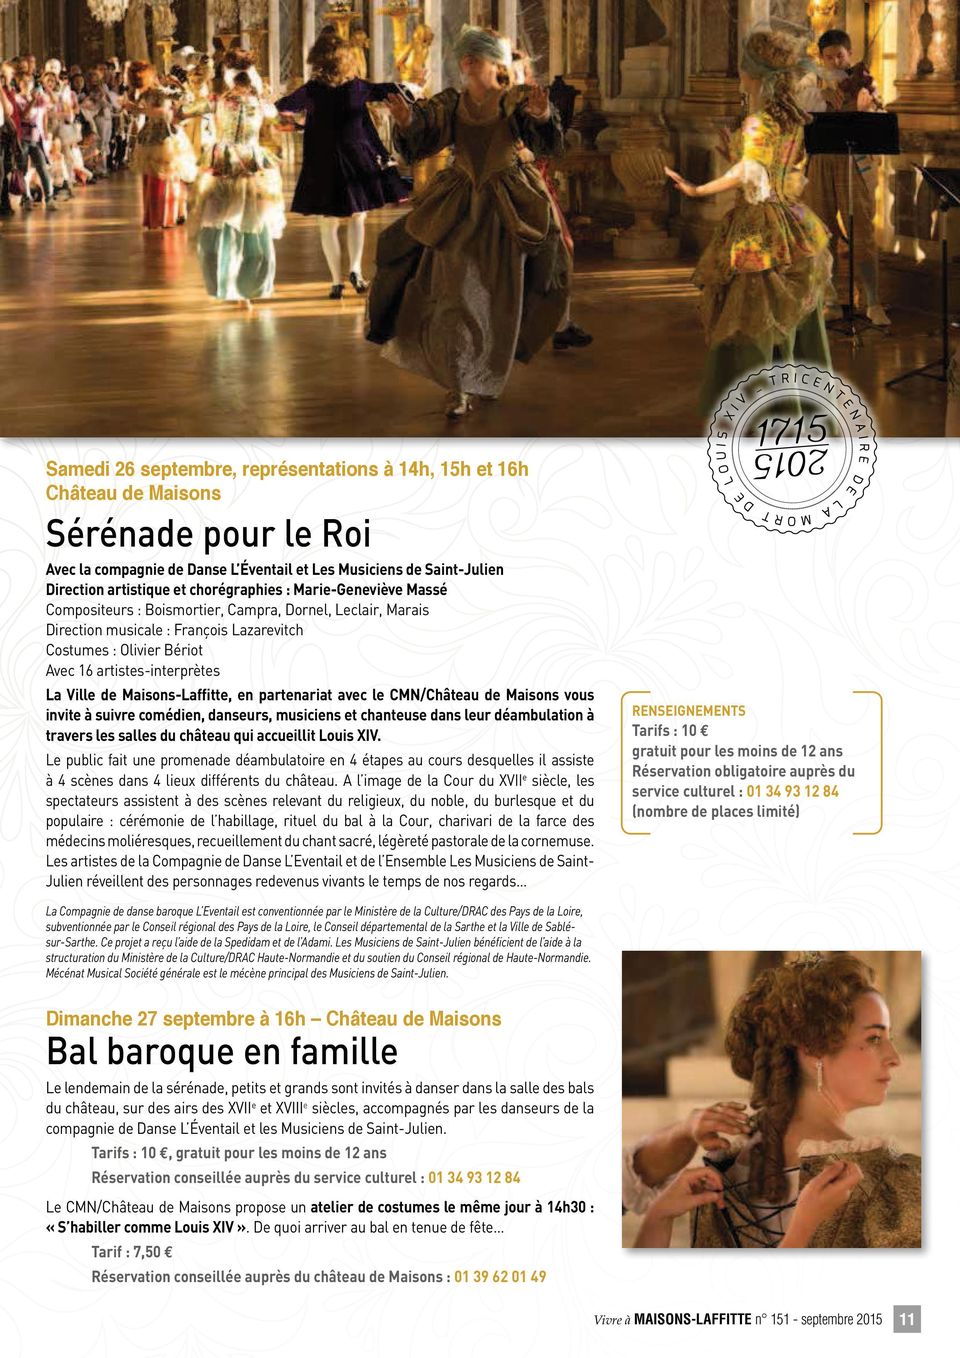 Maisons-Laffitte, en partenariat avec le CMN/ vous invite à suivre comédien, danseurs, musiciens et chanteuse dans leur déambulation à travers les salles du château qui accueillit Louis XIV.